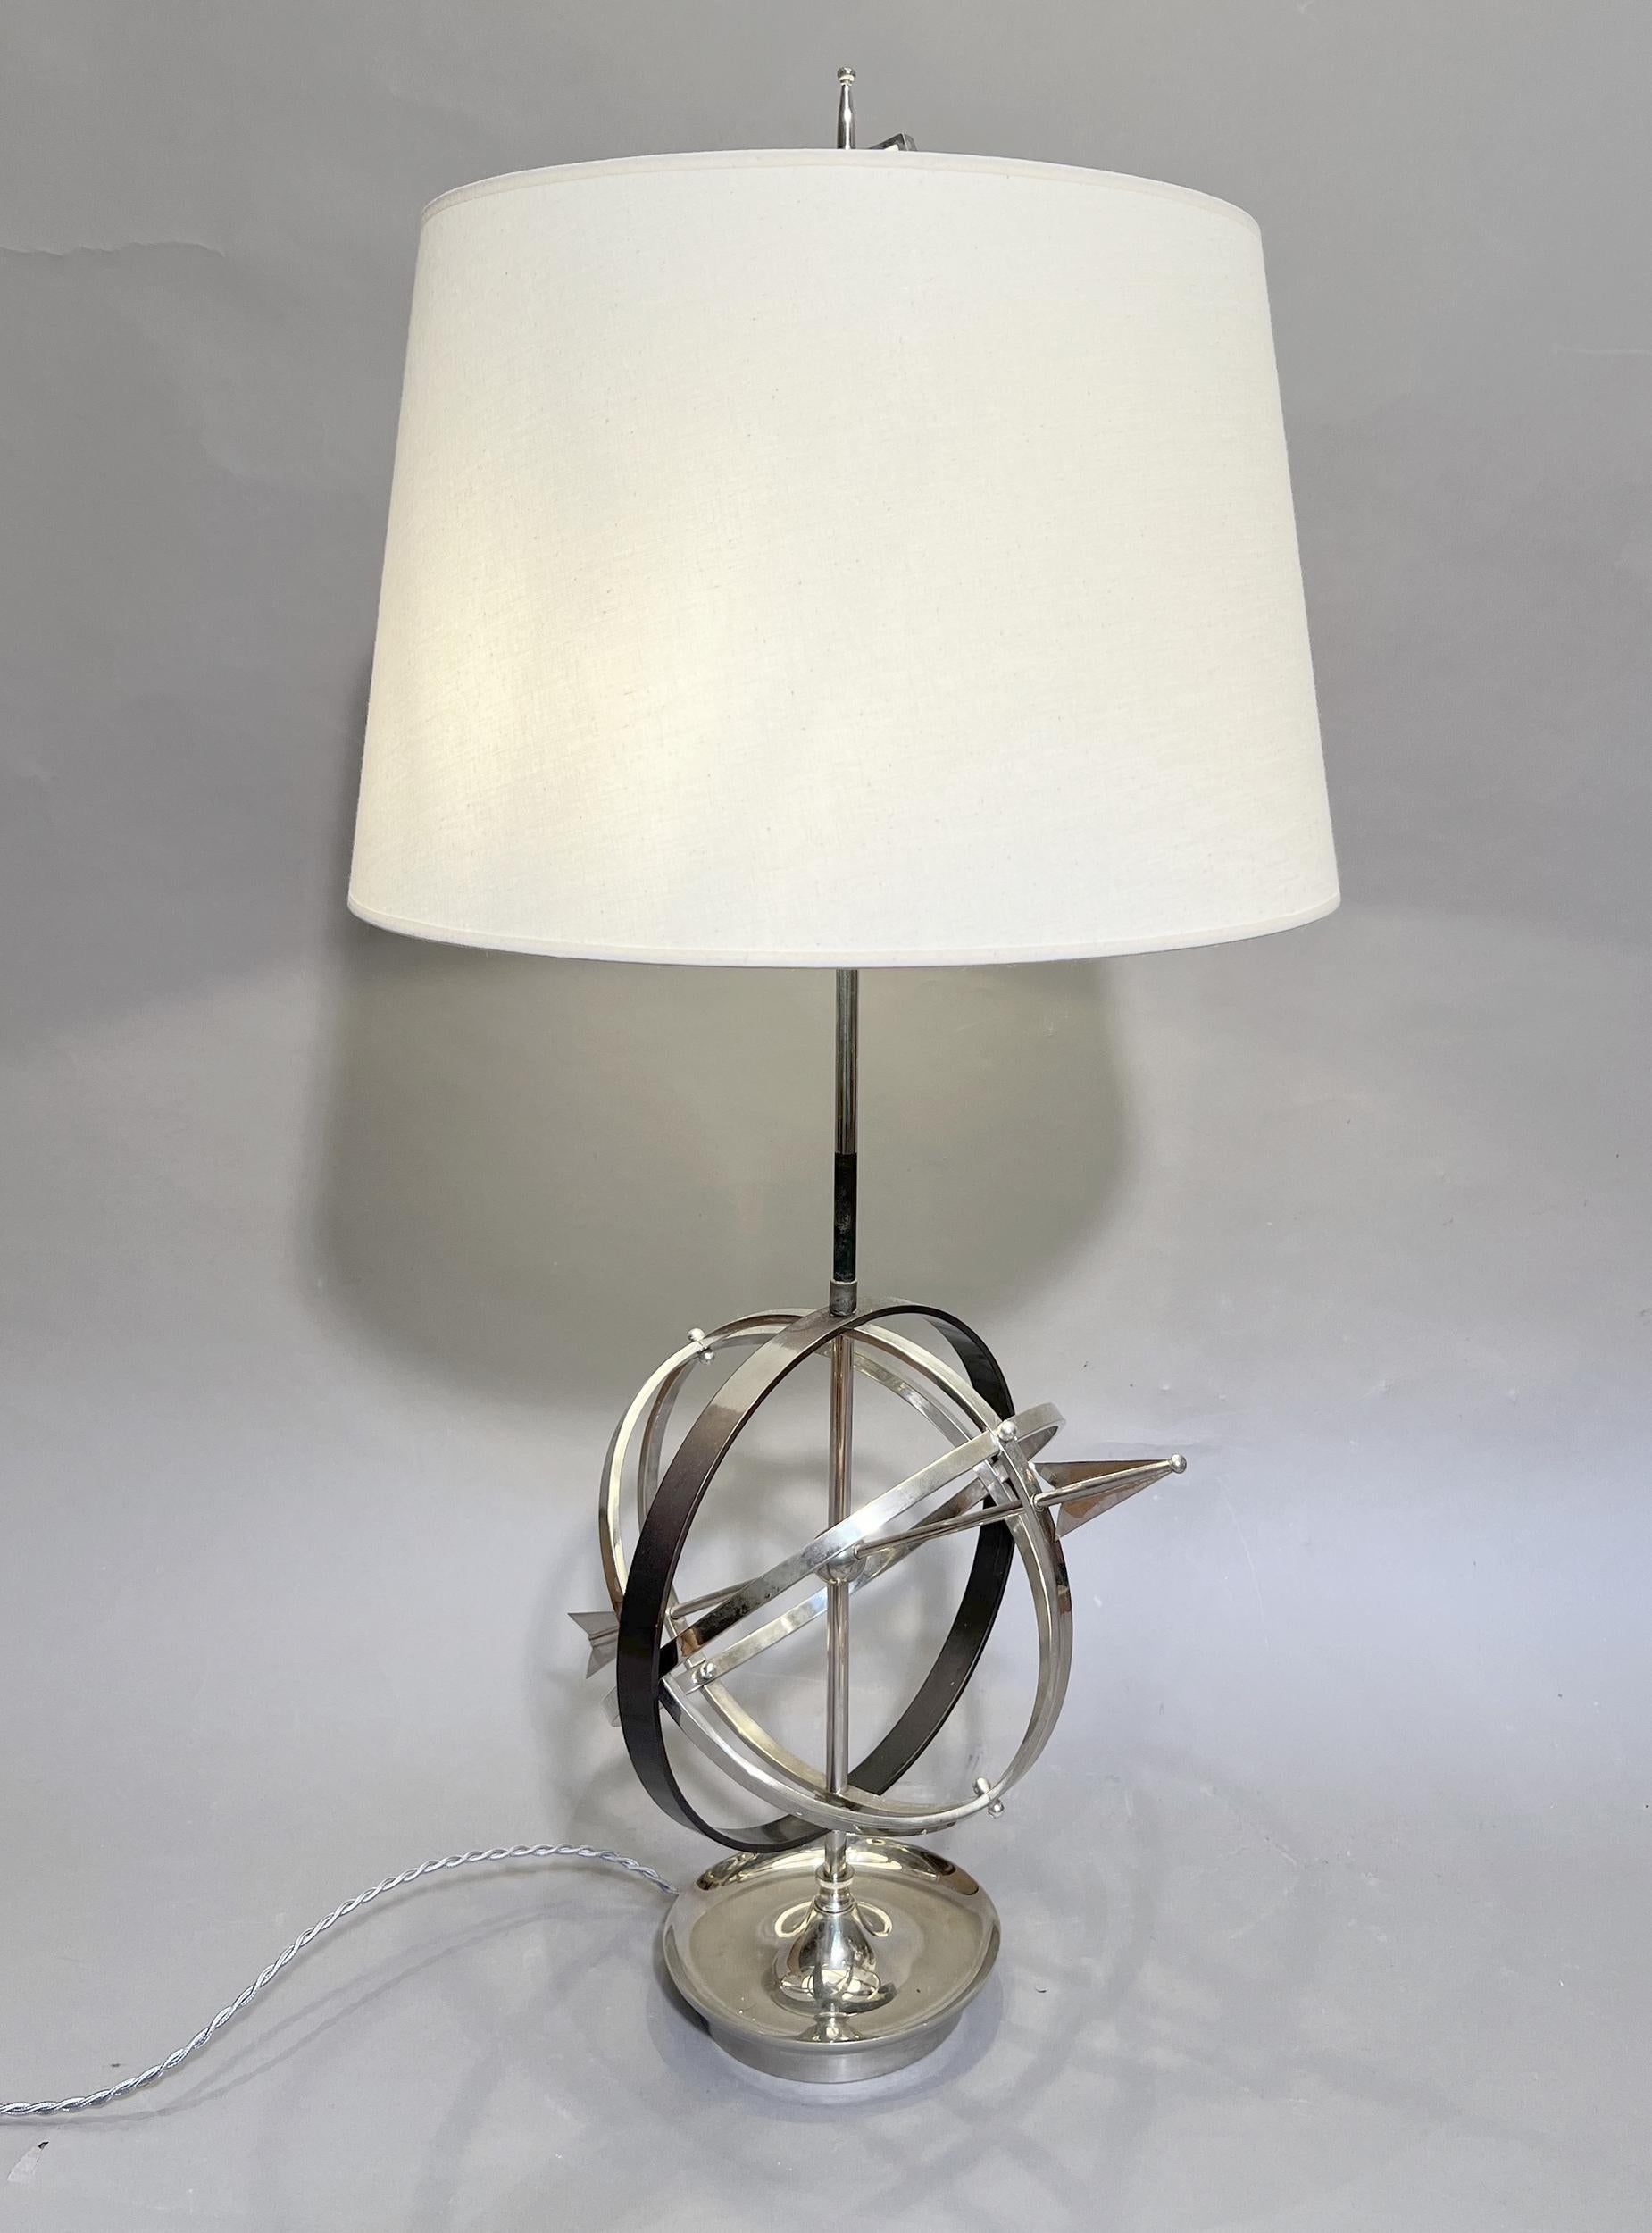 Große Lampe im Bouillotte-Stil in Form einer Himmelskugel aus versilbertem Metall und Metall mit Bronzepatina. Neuer Lampenschirm identisch mit dem Original.
Zwei Glühbirnen.
Höhe: 84 cm (33 Zoll)
Durchmesser des Lampenschirms: 40 cm (15,8